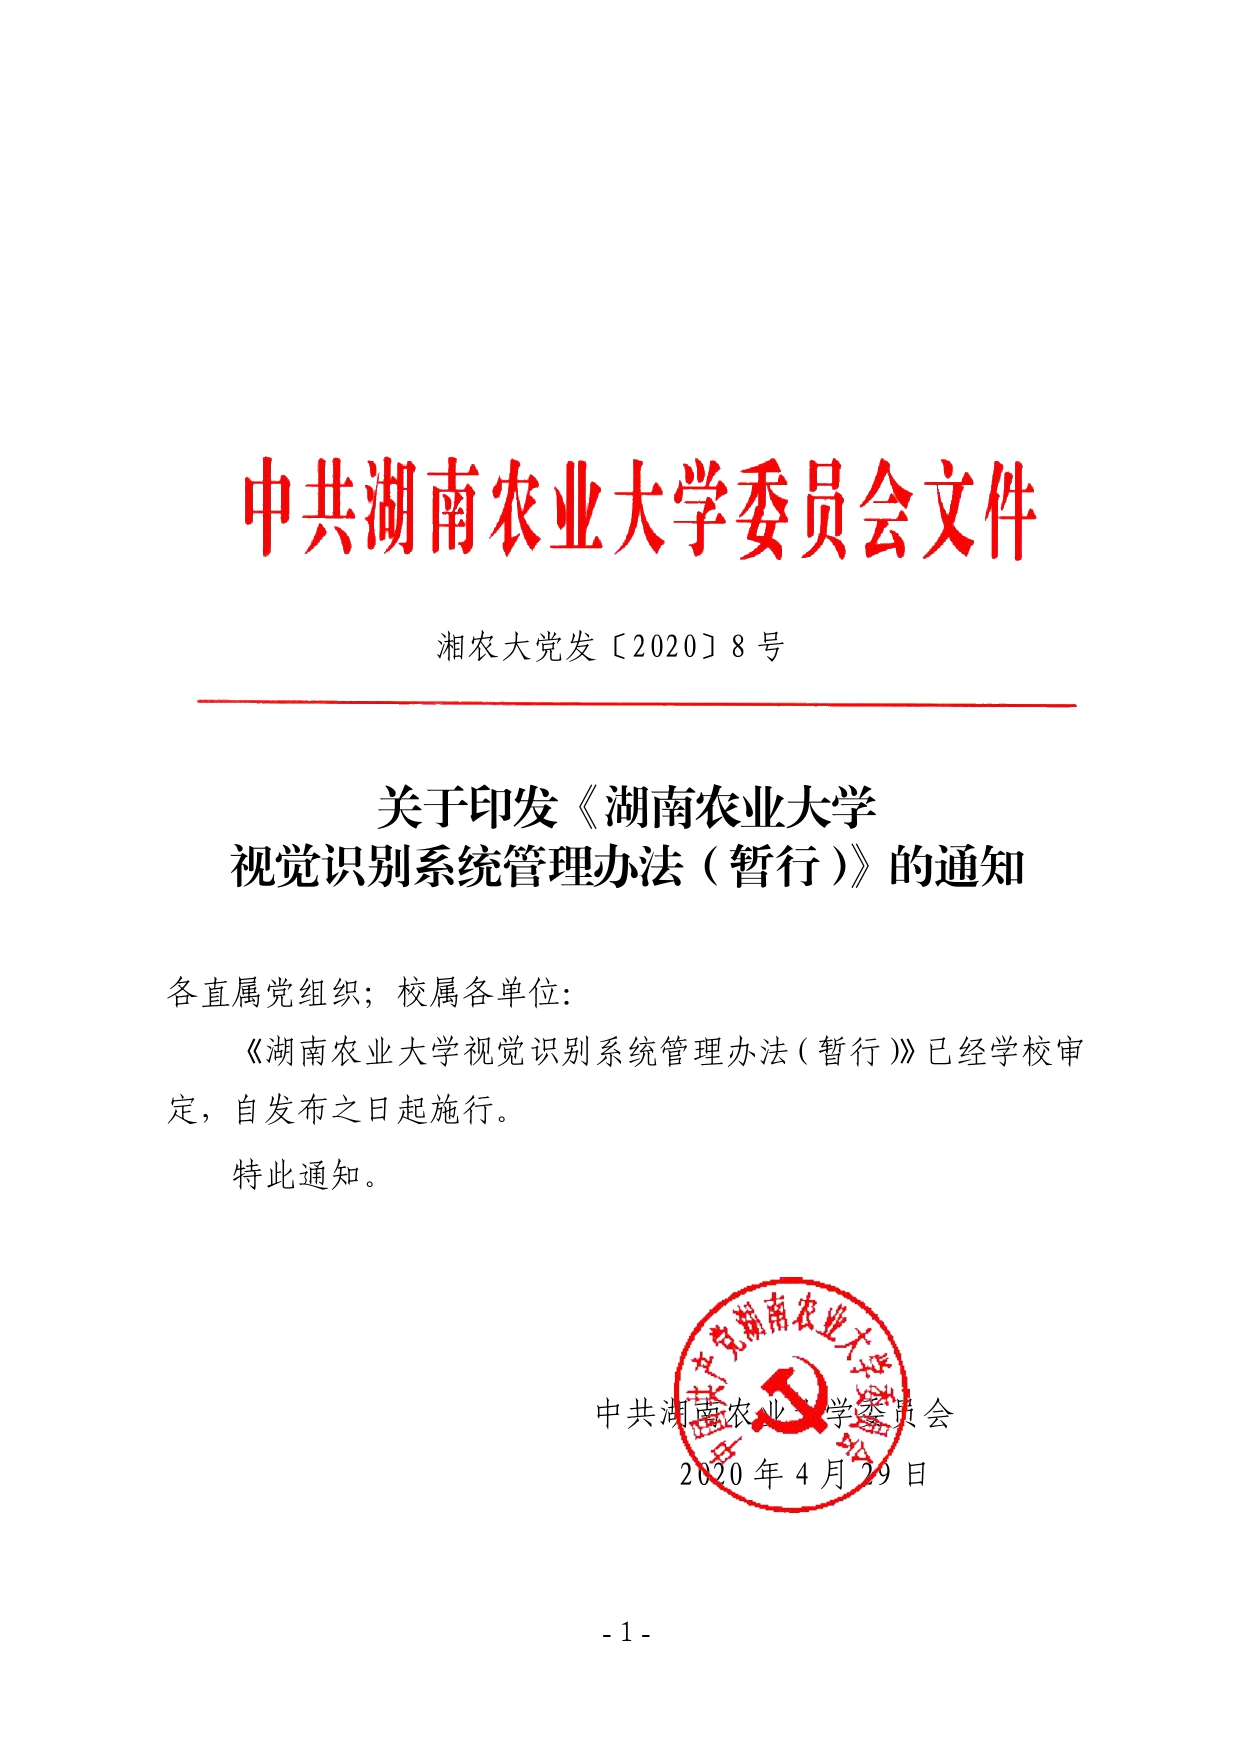 关于印发《湖南农业大学视觉识别系统管理办法（暂行）》的通知-正文_page-0001